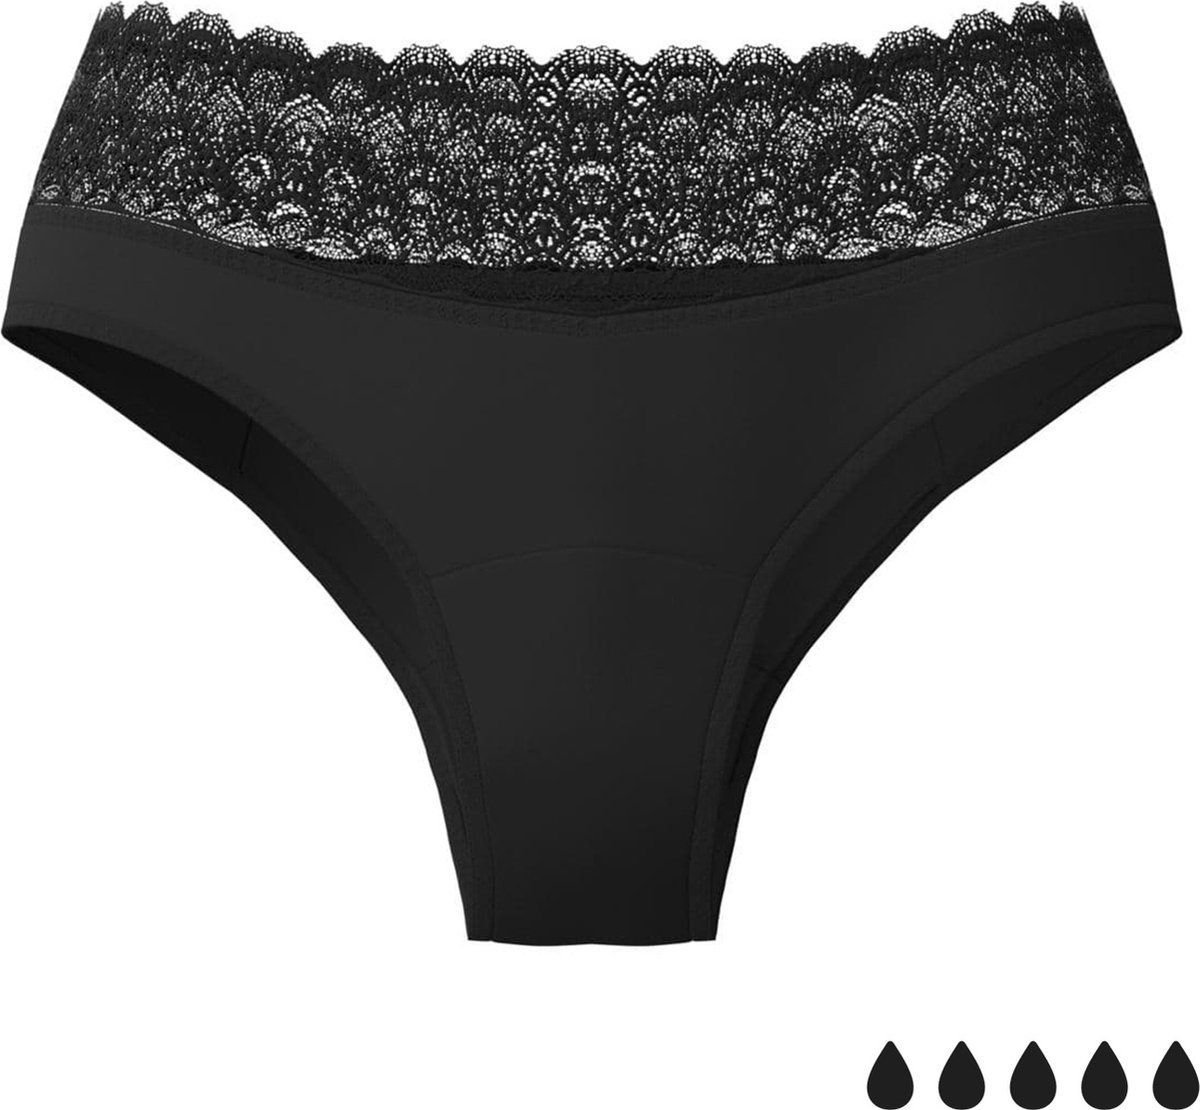 Weekiss Menstruatie Klassiek - Menstruatie Ondergoed, period underwear, period panties, XXL (44), Zwart